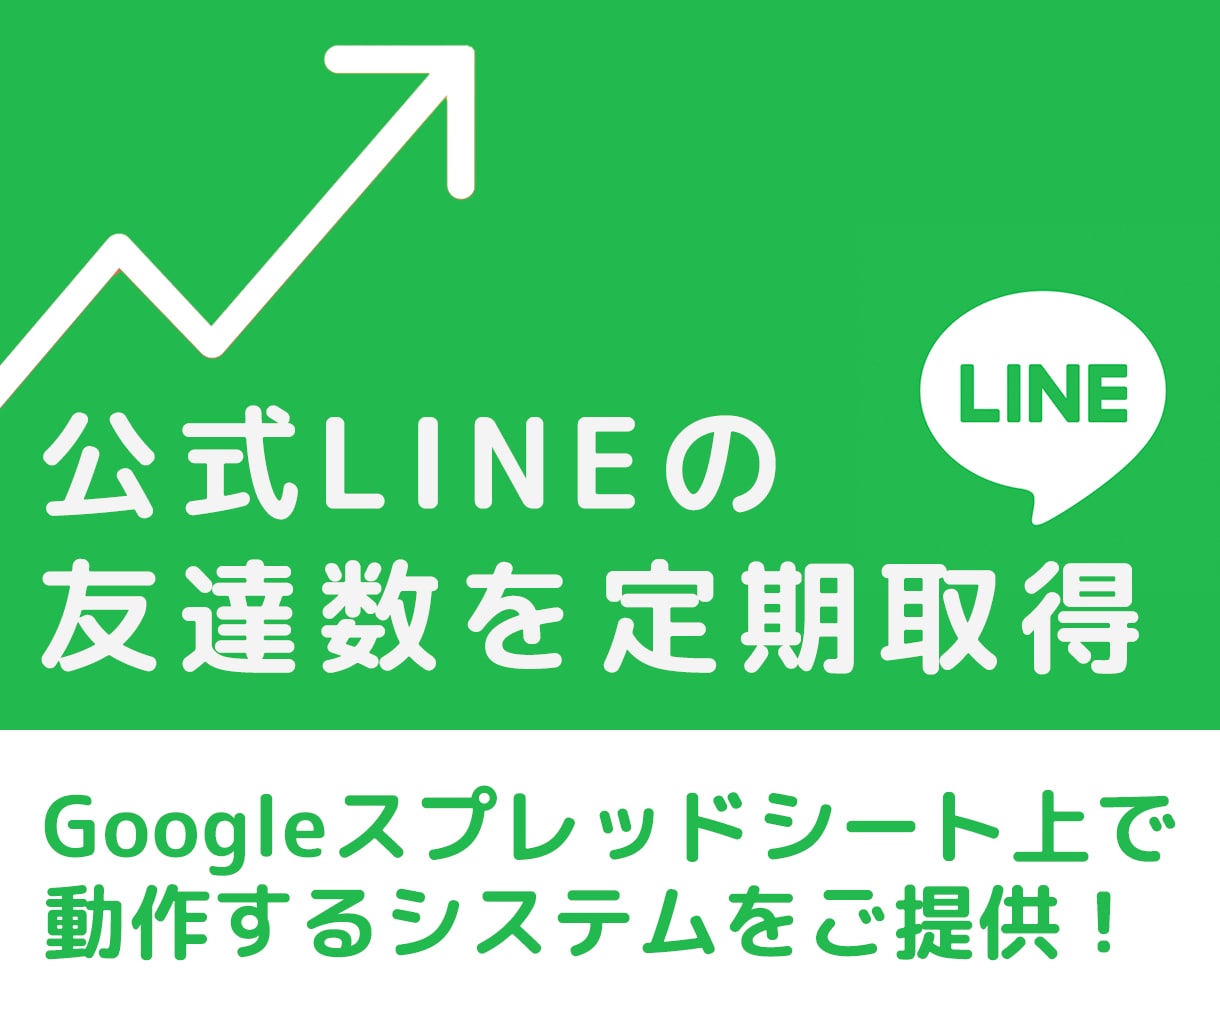 💬ココナラ｜公式LINEの友達増減を取得するシステム提供します
               Yoko （ヨコ）  
                -…